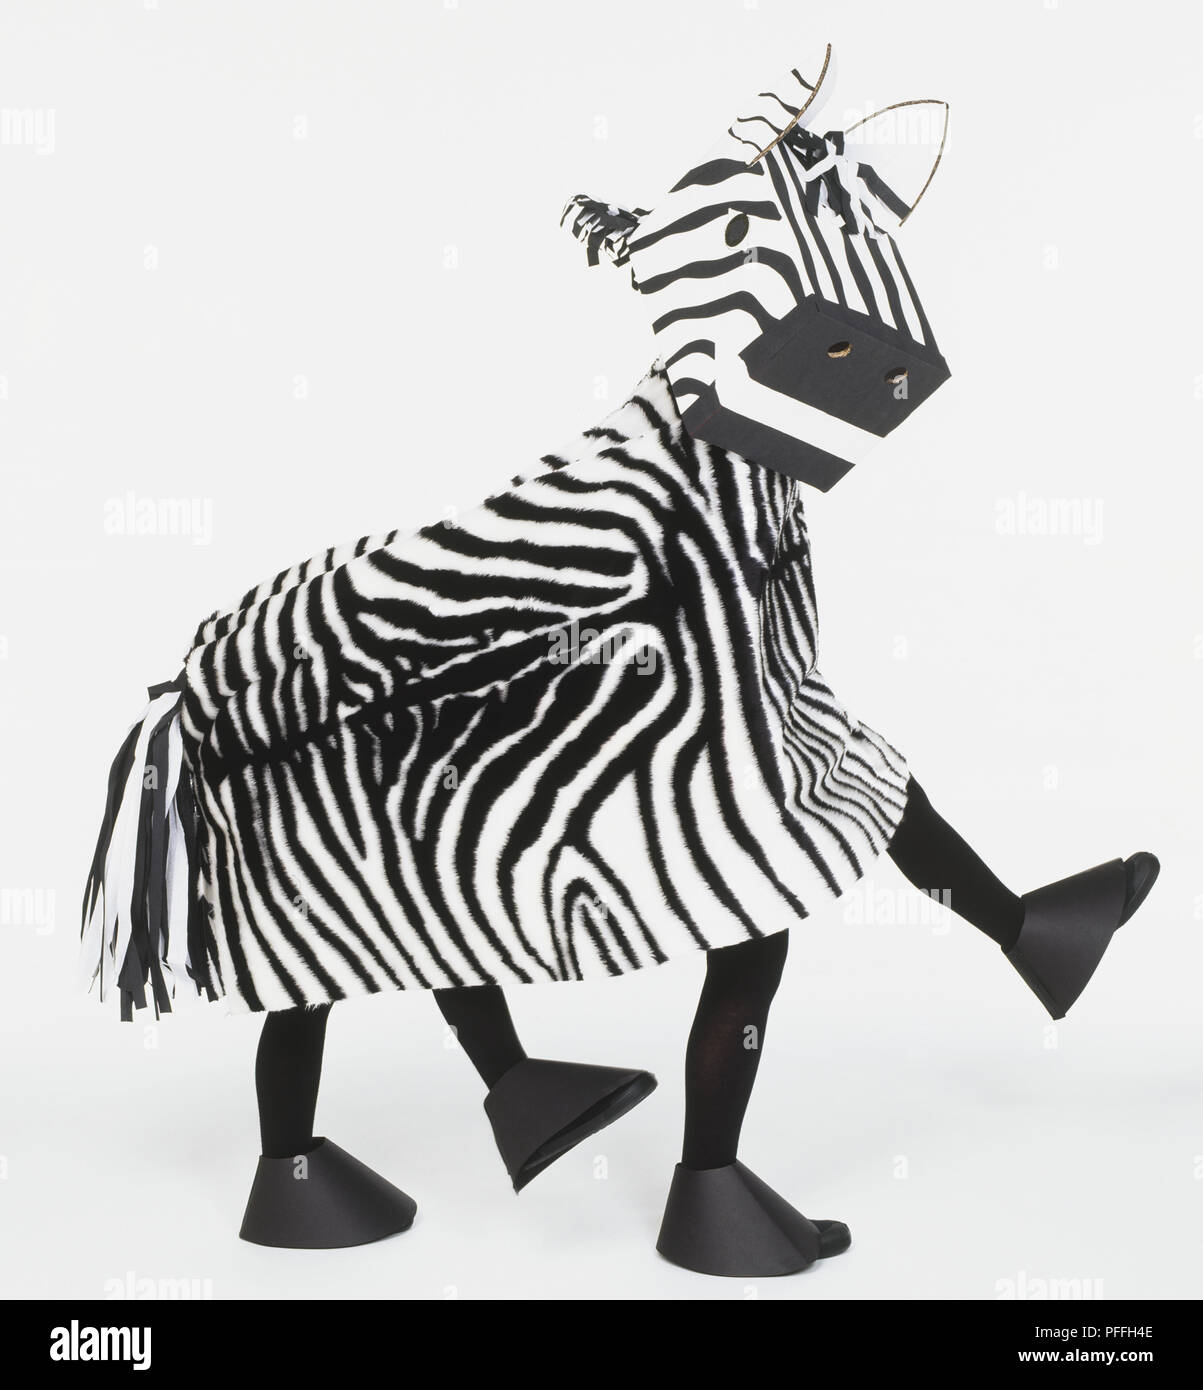 Deux enfants marcher dans zebra costume, side view Banque D'Images